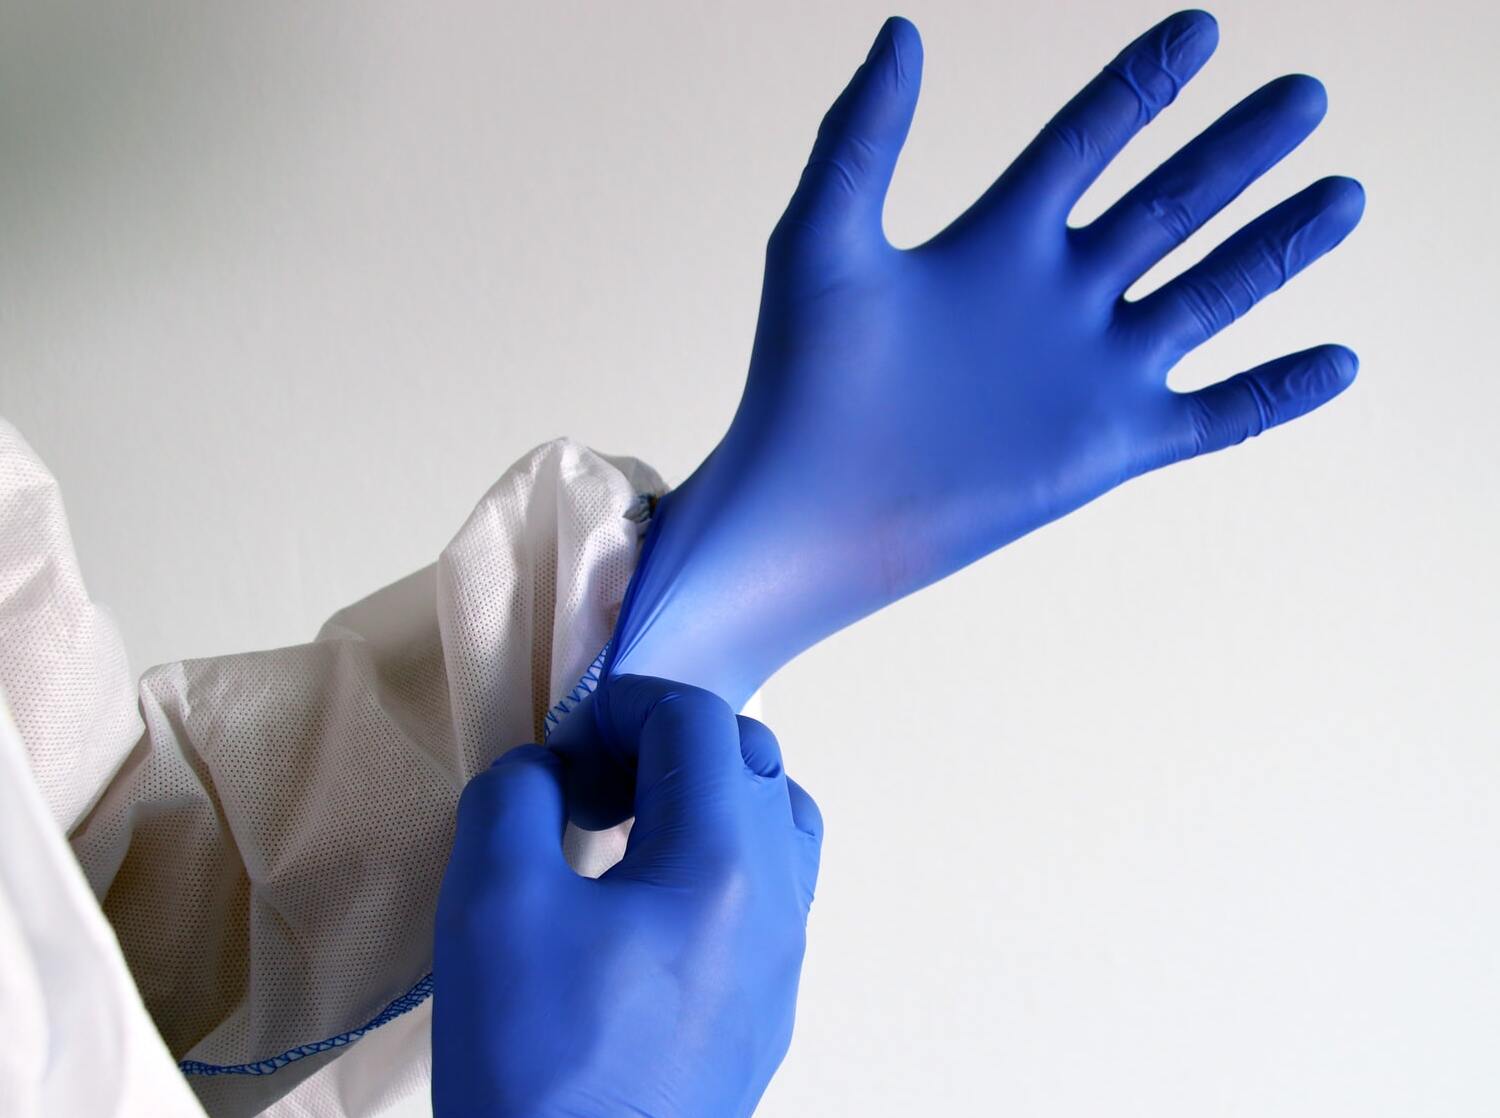 image of medical gloves